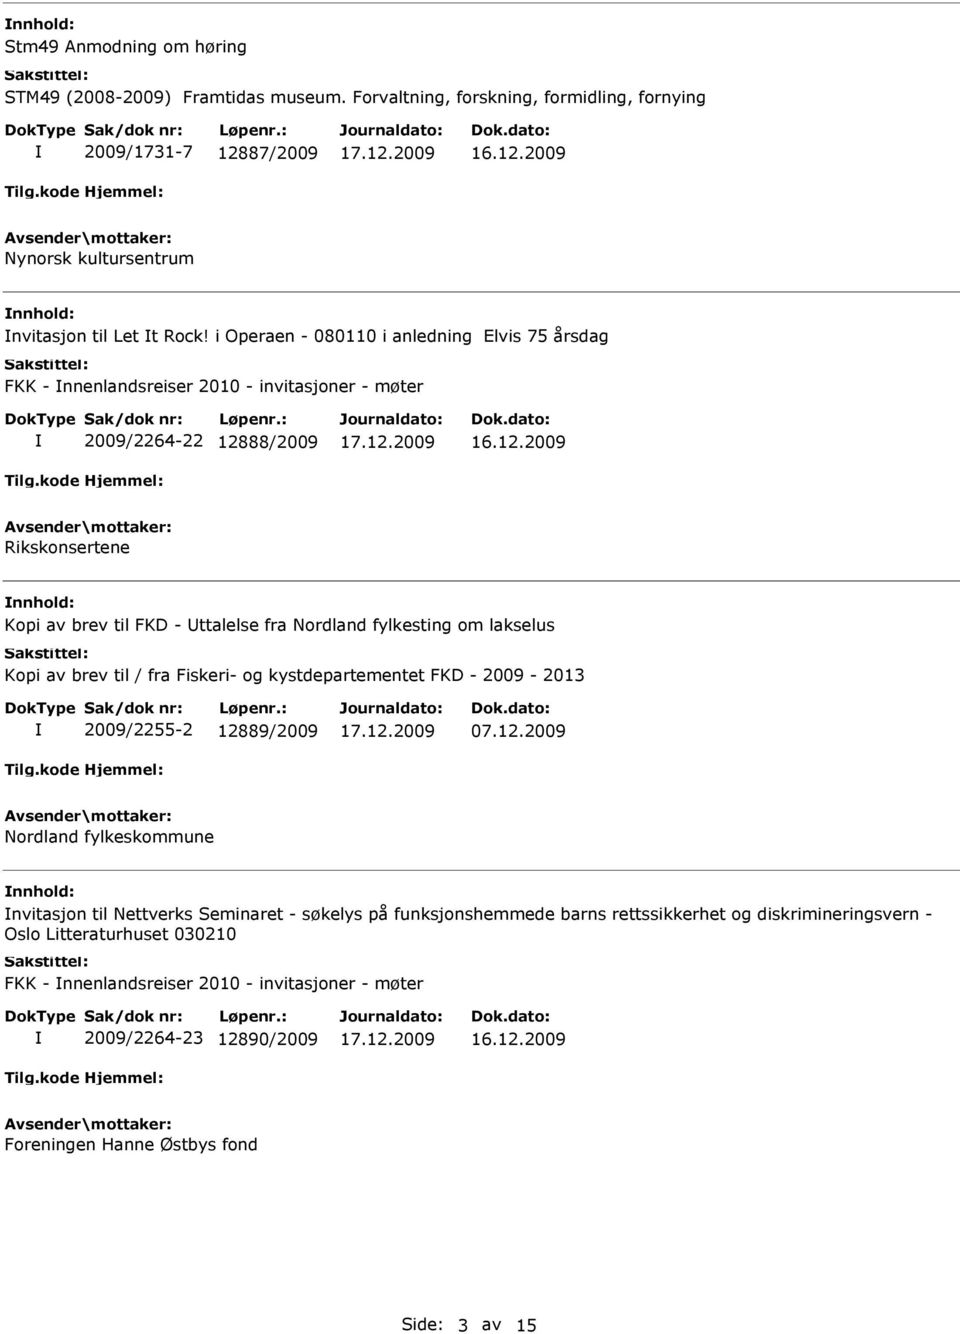 fylkesting om lakselus Kopi av brev til / fra Fiskeri- og kystdepartementet FKD - 2009-2013 2009/2255-2 128